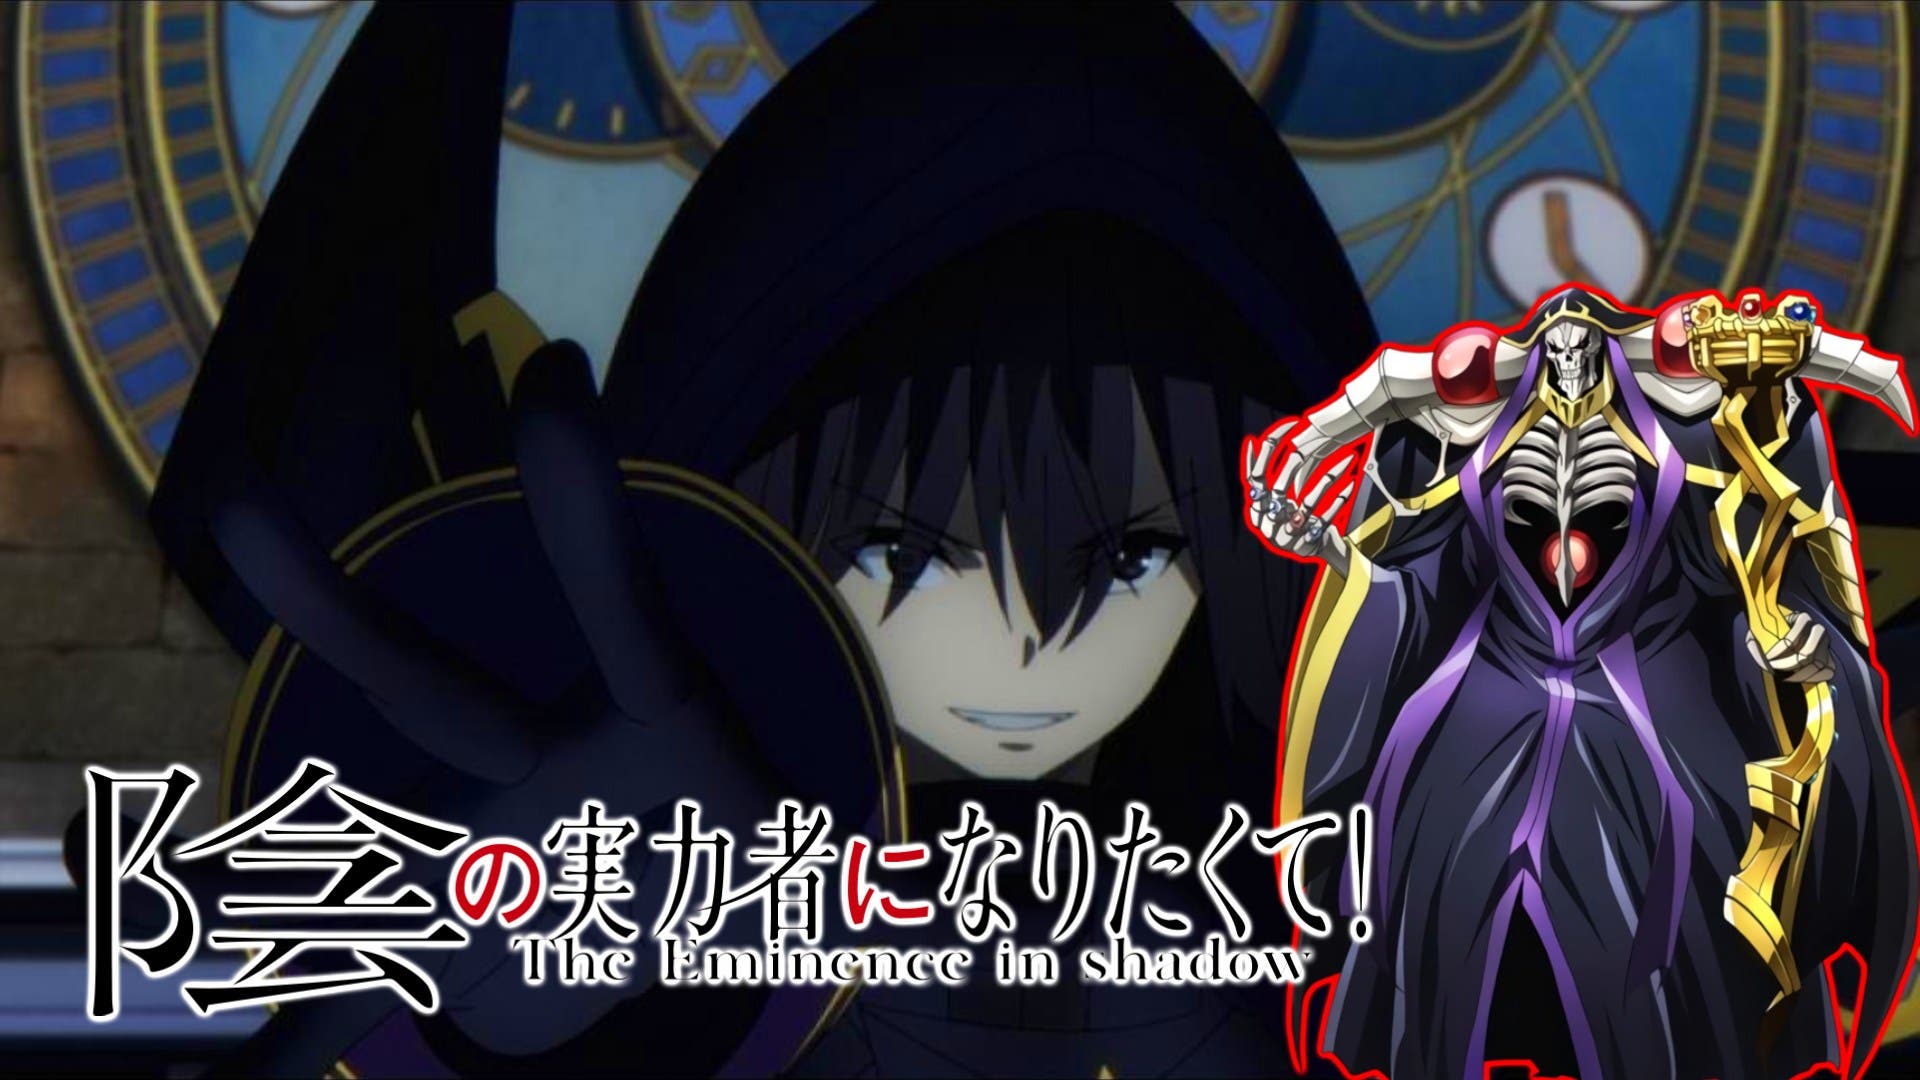 The Eminence in Shadow: este es el reparto que dará vida a los  protagonistas del anime